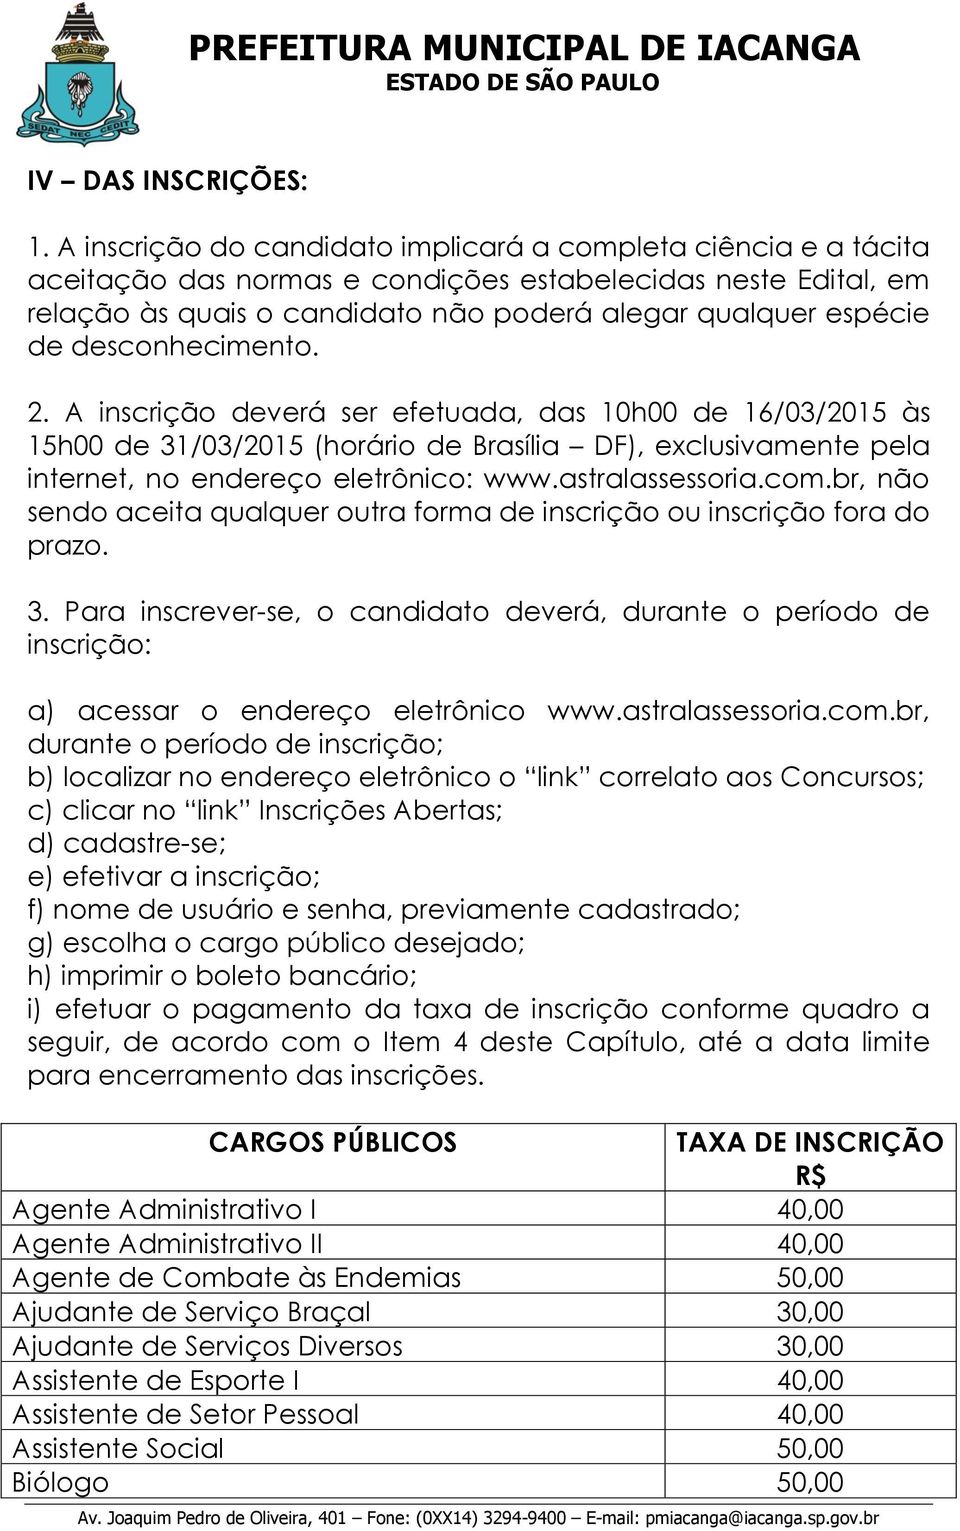 desconhecimento. 2. A inscrição deverá ser efetuada, das h00 de 16/03/15 às 15h00 de 31/03/15 (horário de Brasília DF), exclusivamente pela internet, no endereço eletrônico: www.astralassessoria.com.